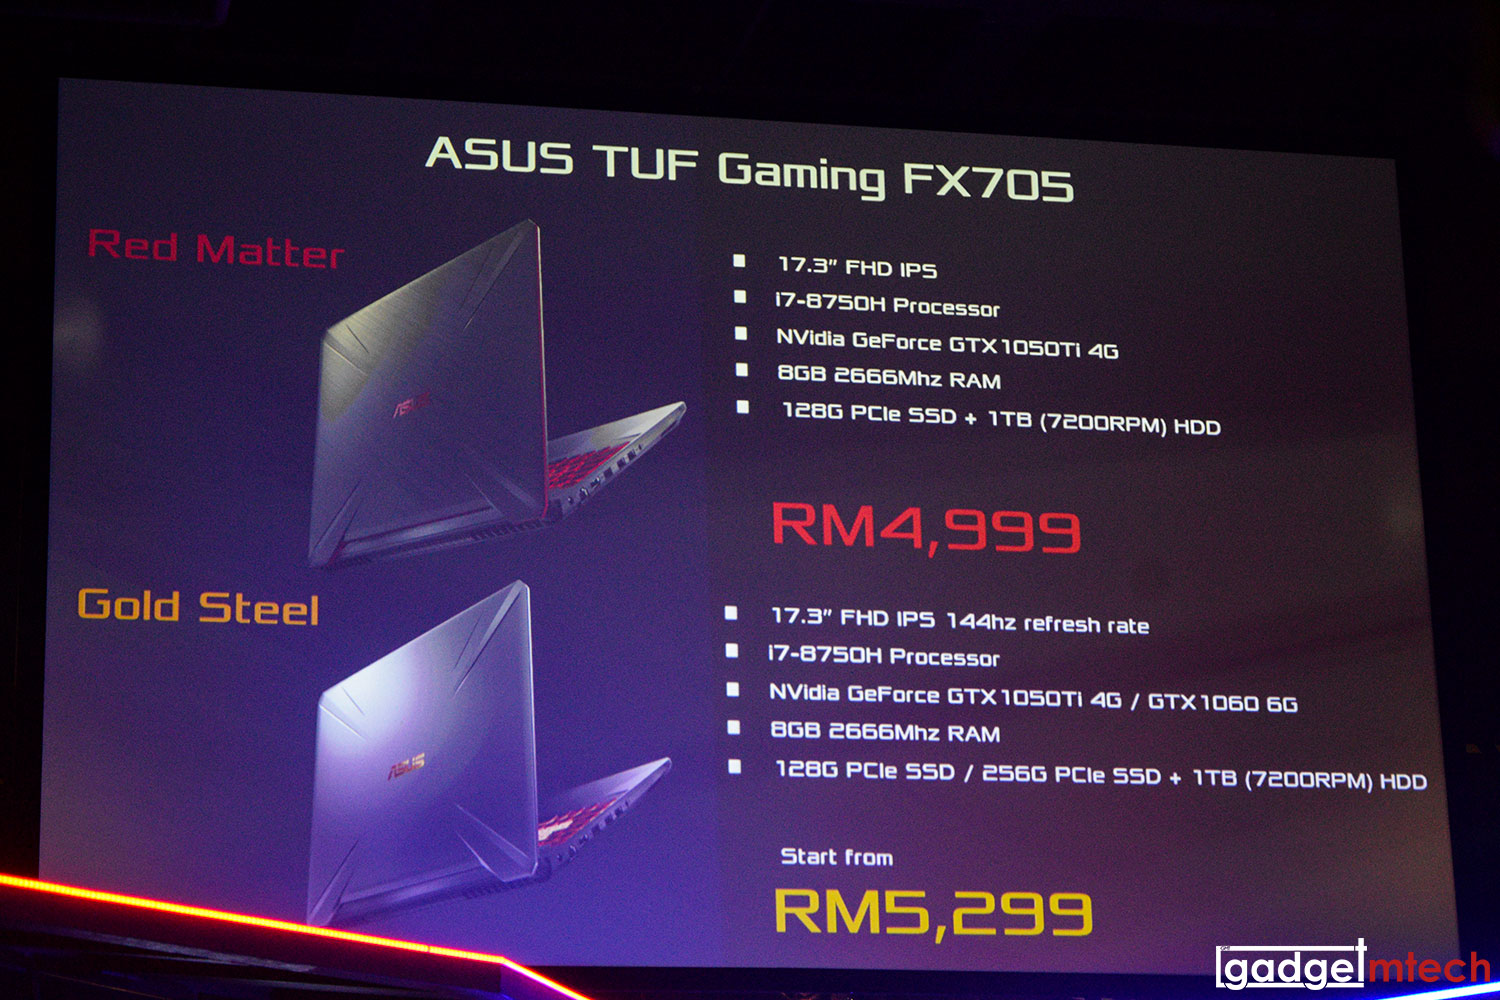 ASUS TUF Gaming FX705 Price